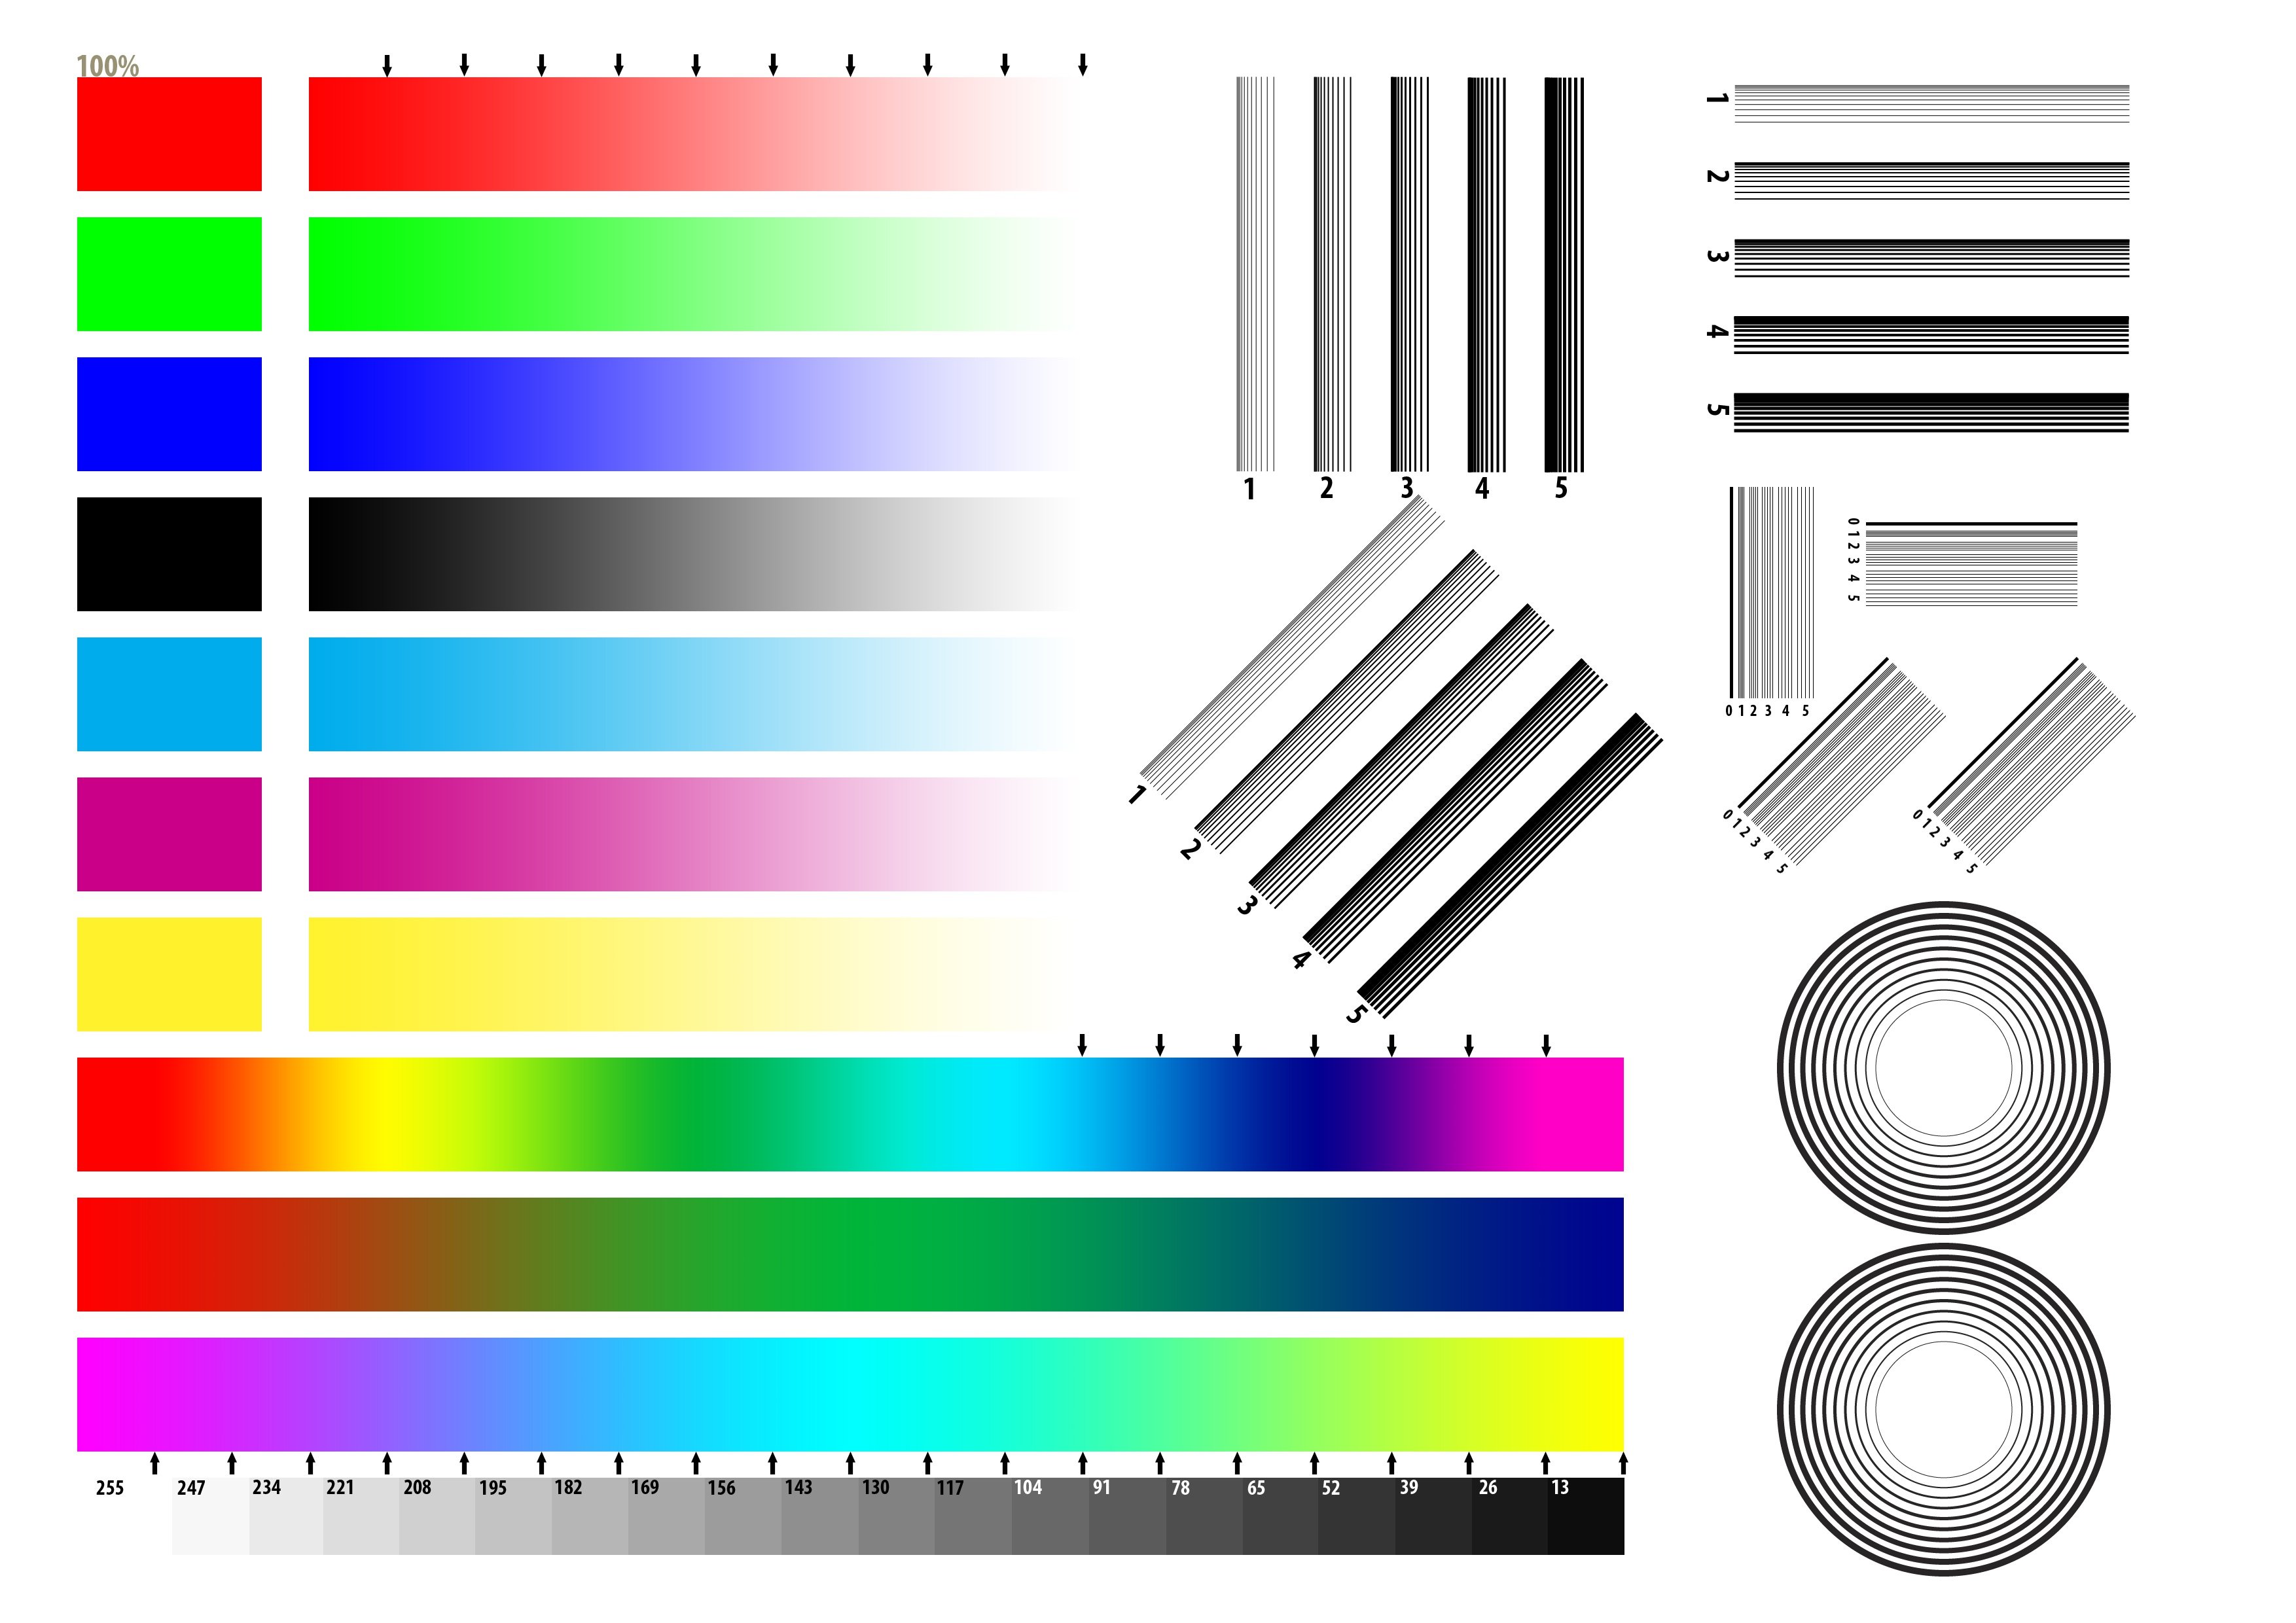 Полноцветное изображение поддерживается прозрачность разных степеней